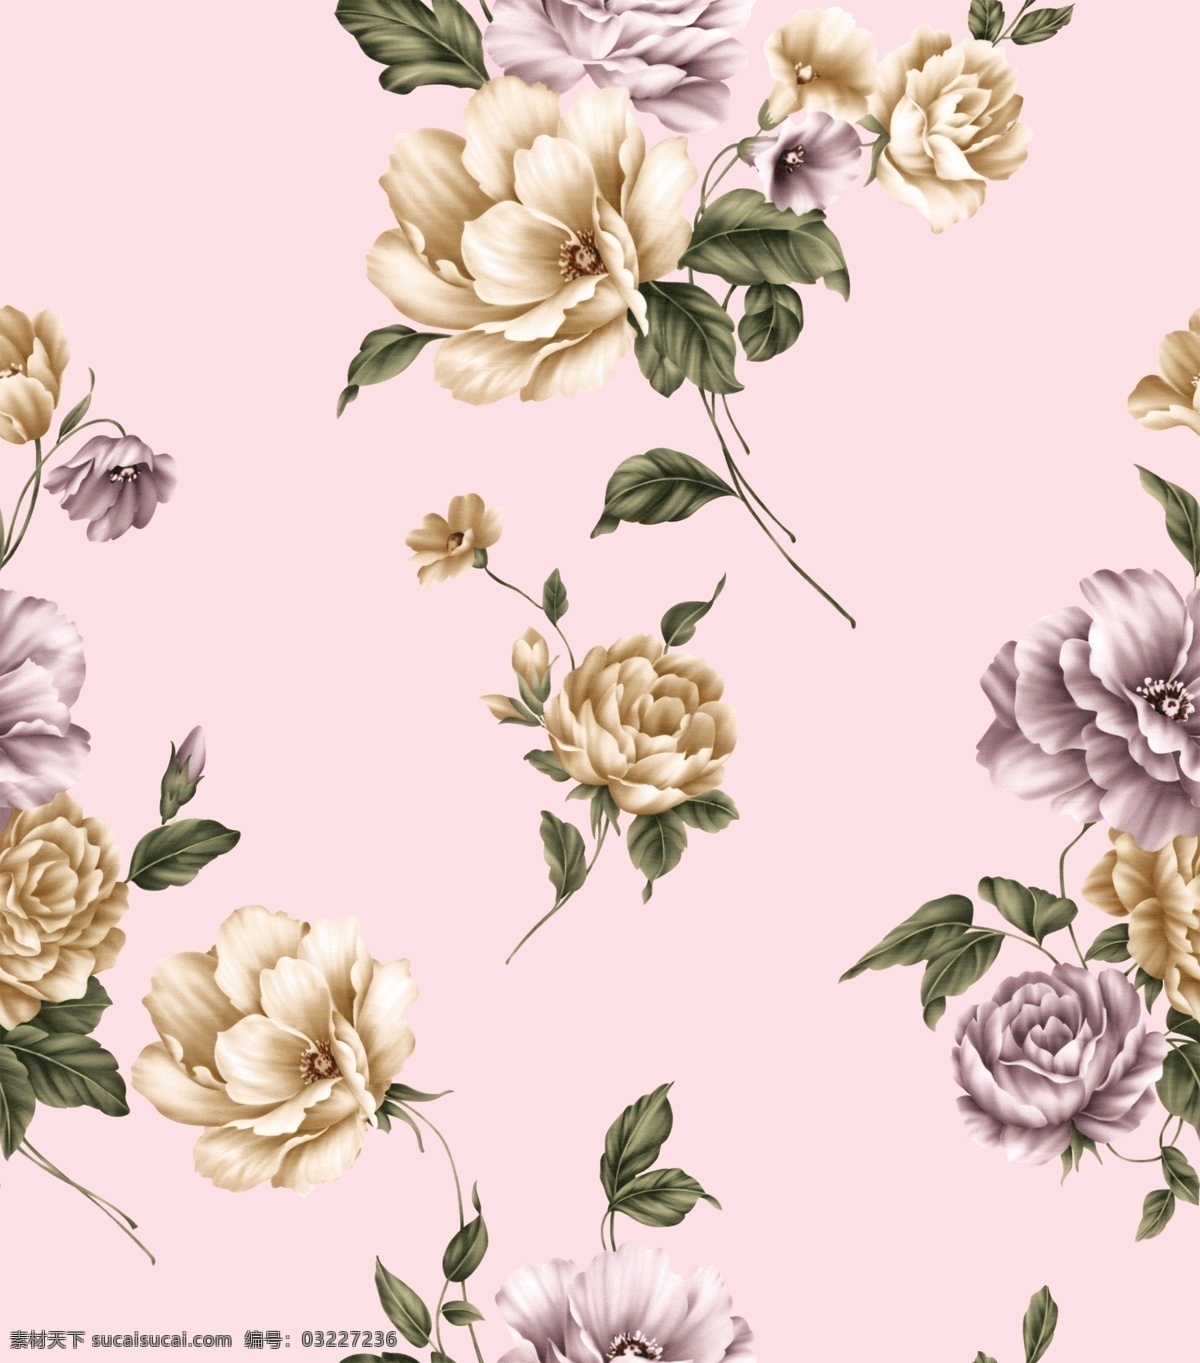 数码 印花 可爱 玫瑰 回位 纹理 图 数码印花 服装设计 分层素材 可直接换底 时尚 2016 粉色